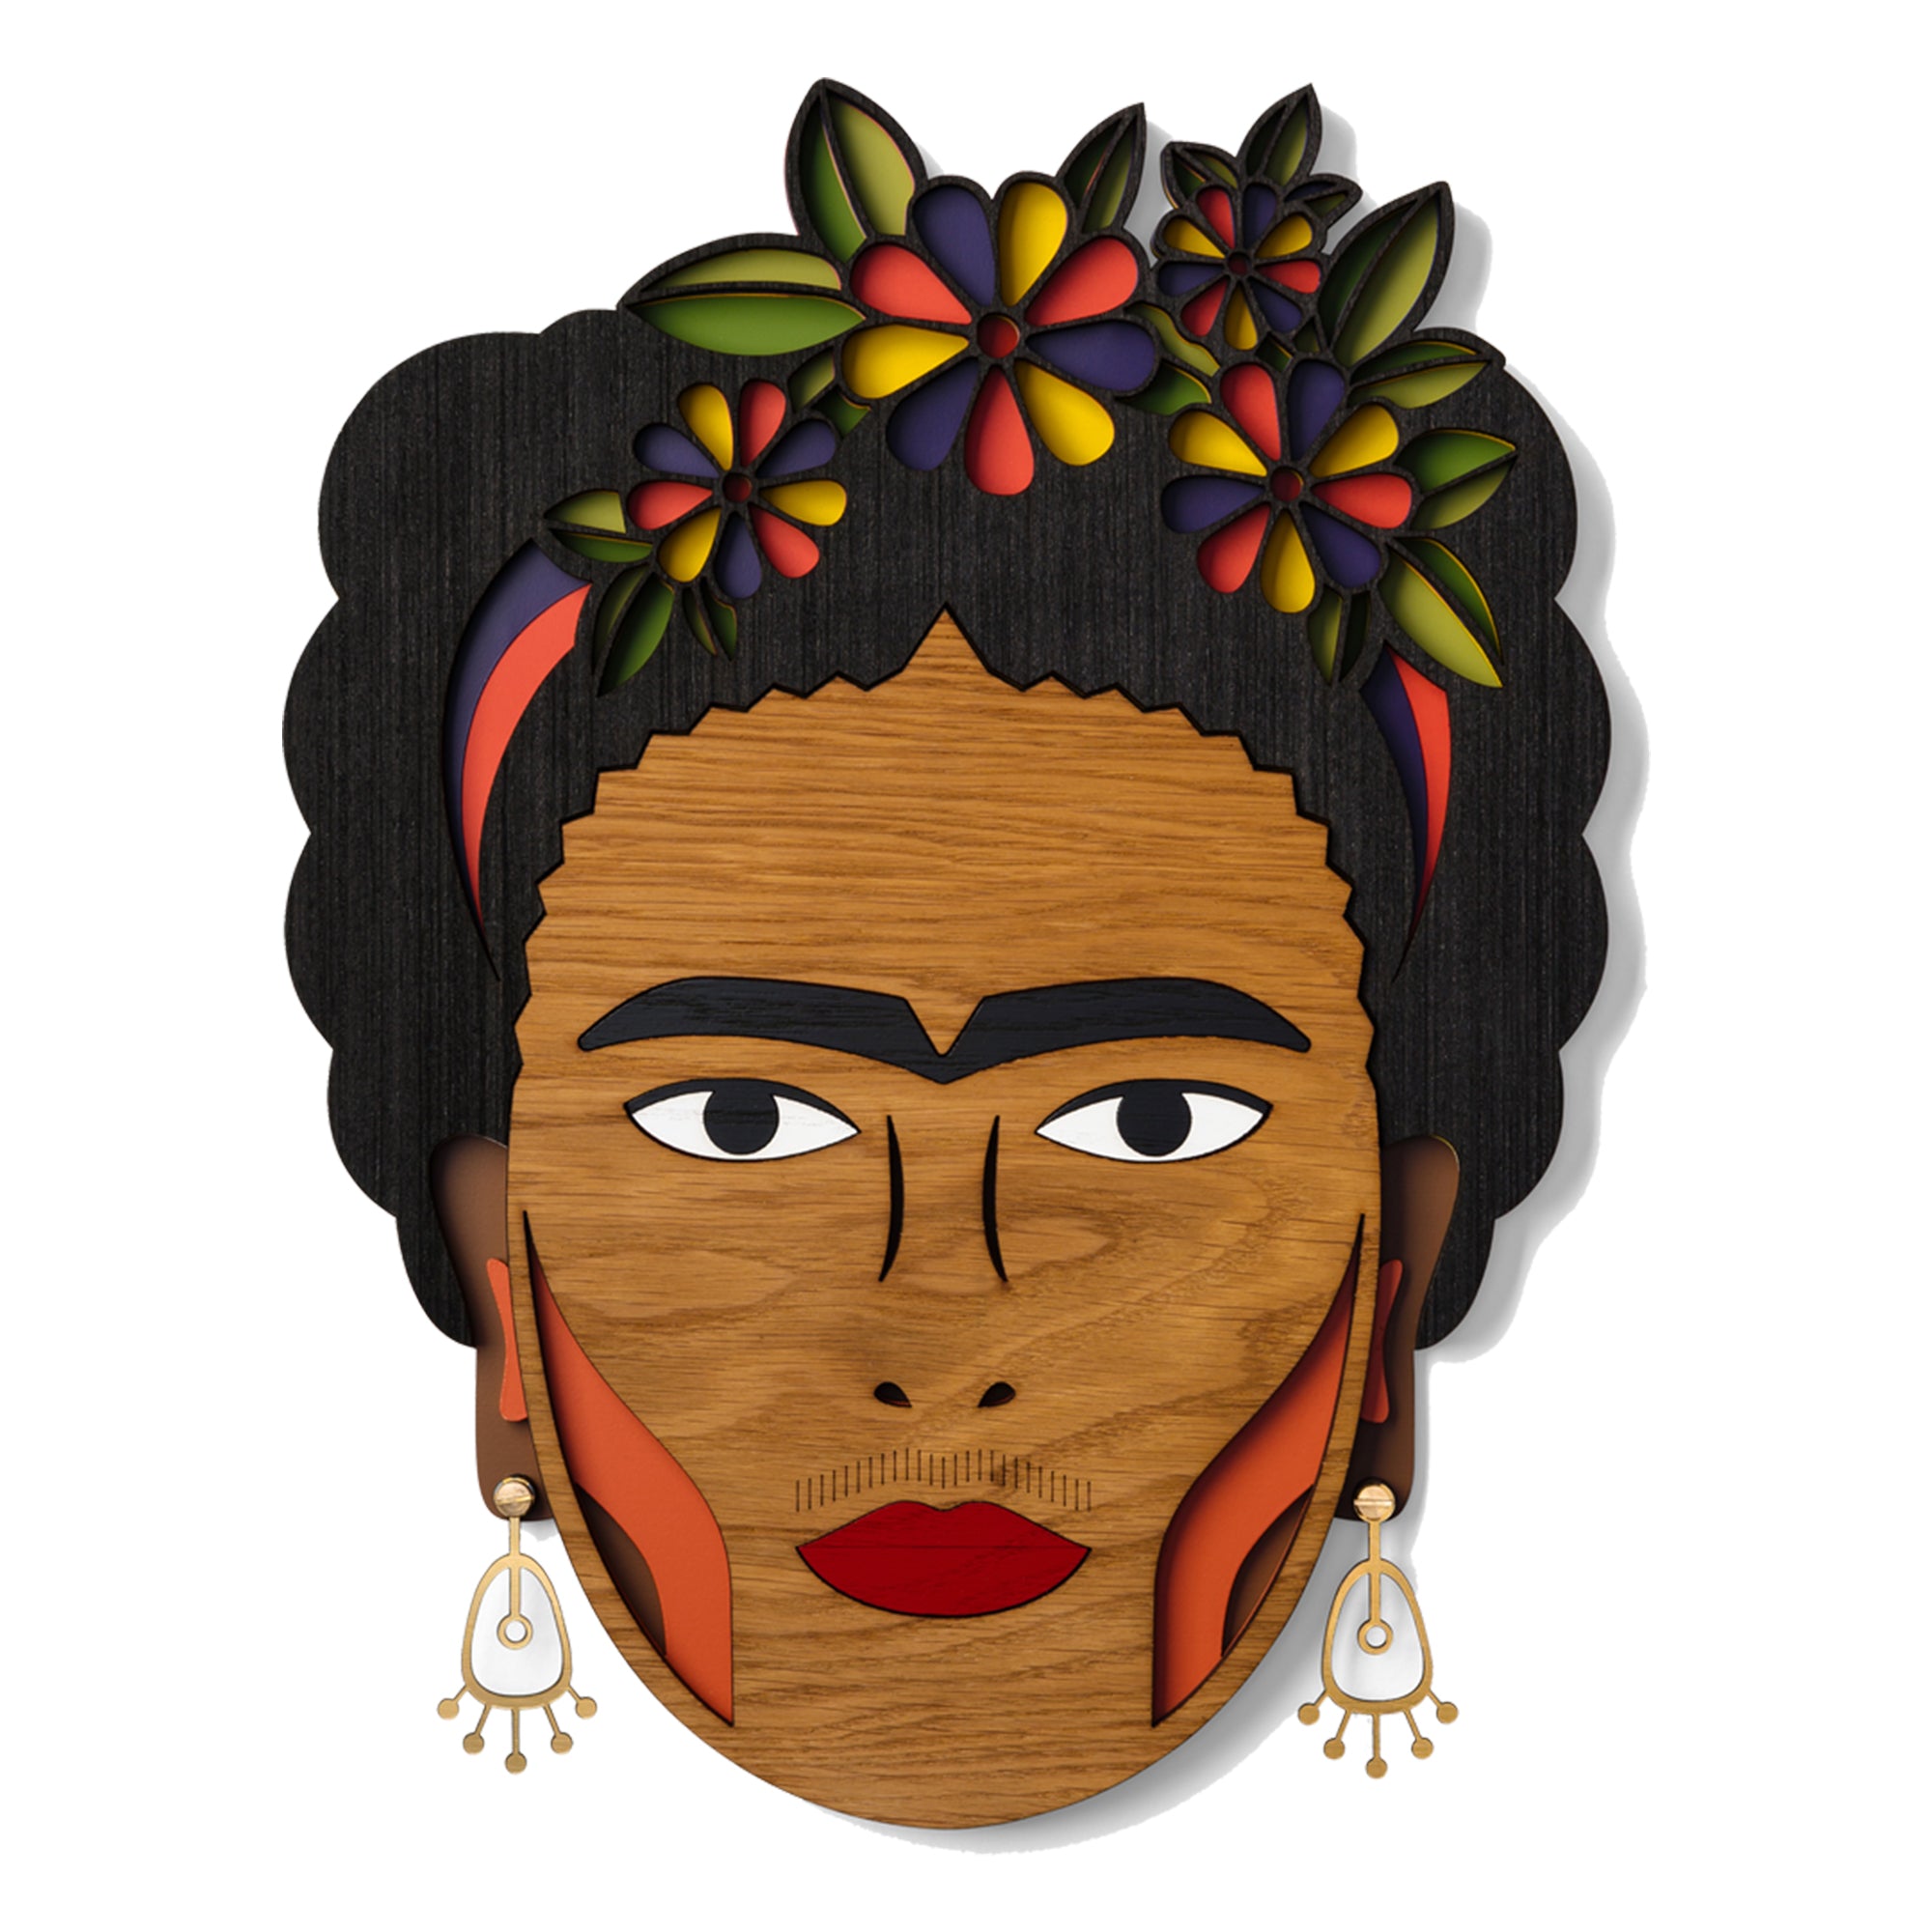 Self Portrait by Frida Kahlo Poster and Wall Art Item via Umasqu